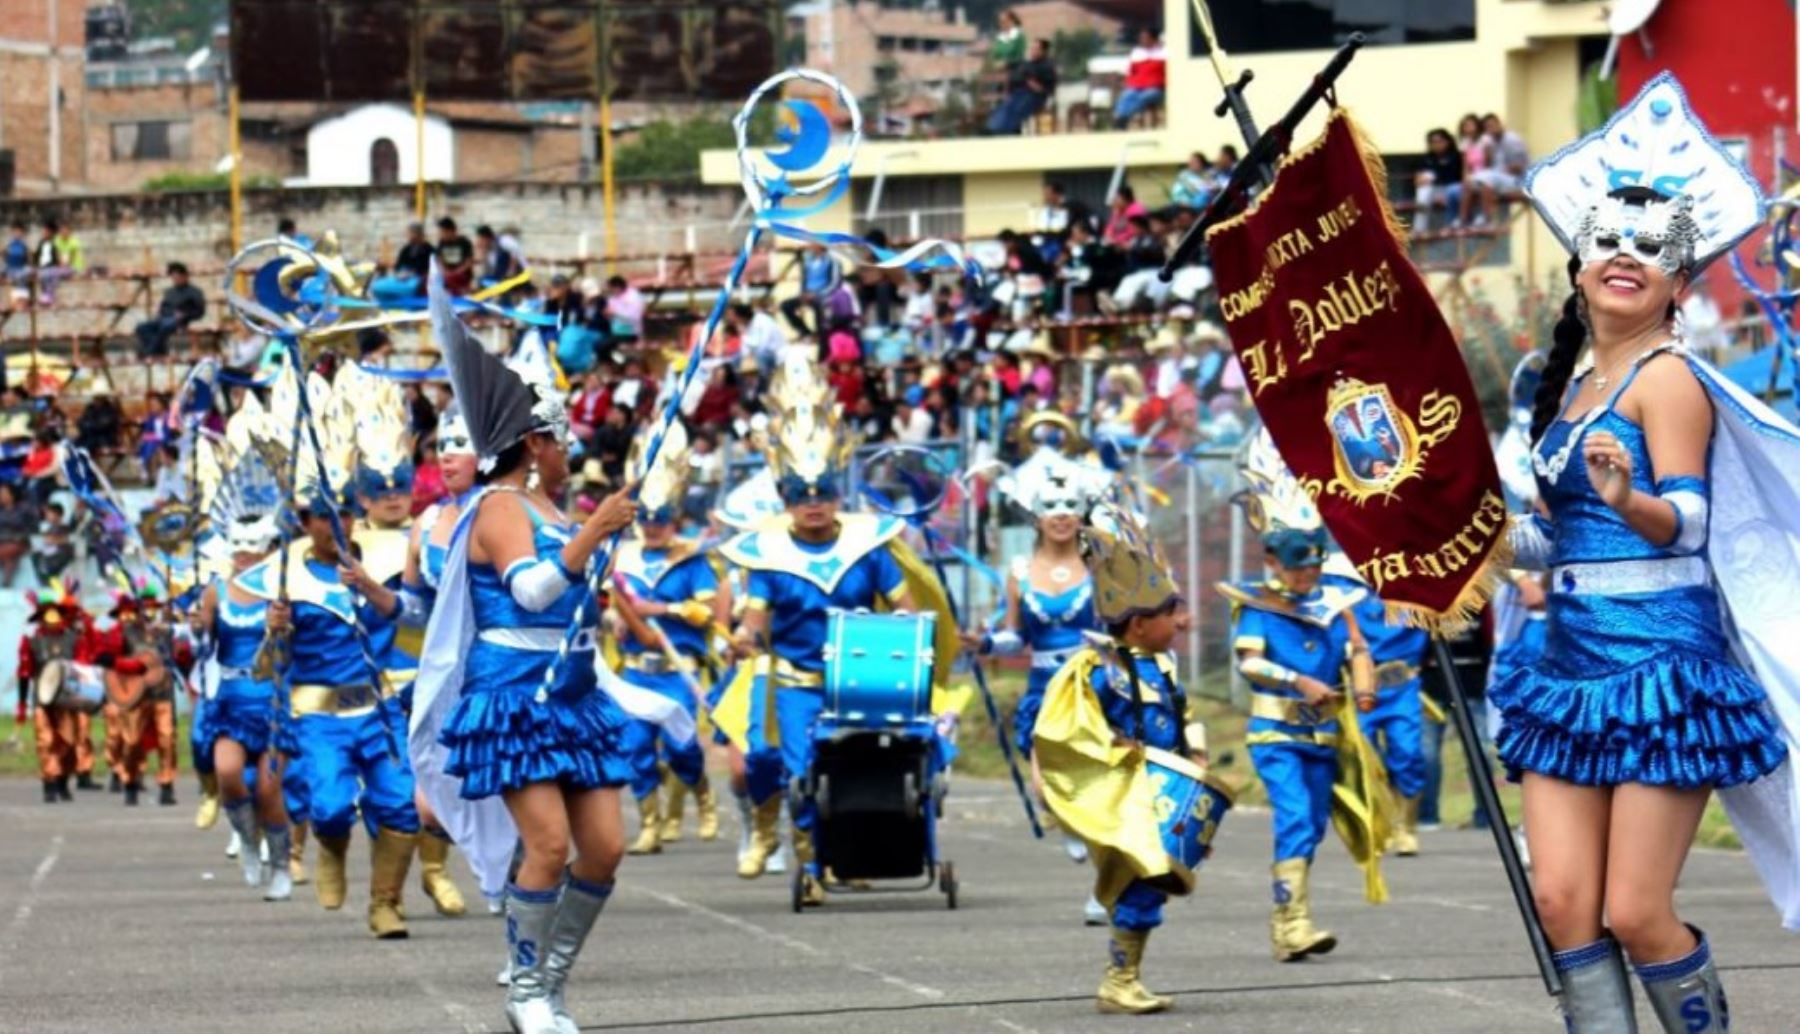 La Municipalidad Provincial presentará oficialmente, el próximo miércoles 18 de enero, el programa de actividades del Carnaval 2017, así como el afiche y toda la información concerniente a esta tradicional y popular festividad, que consagra a Cajamarca como la capital del carnaval peruano.